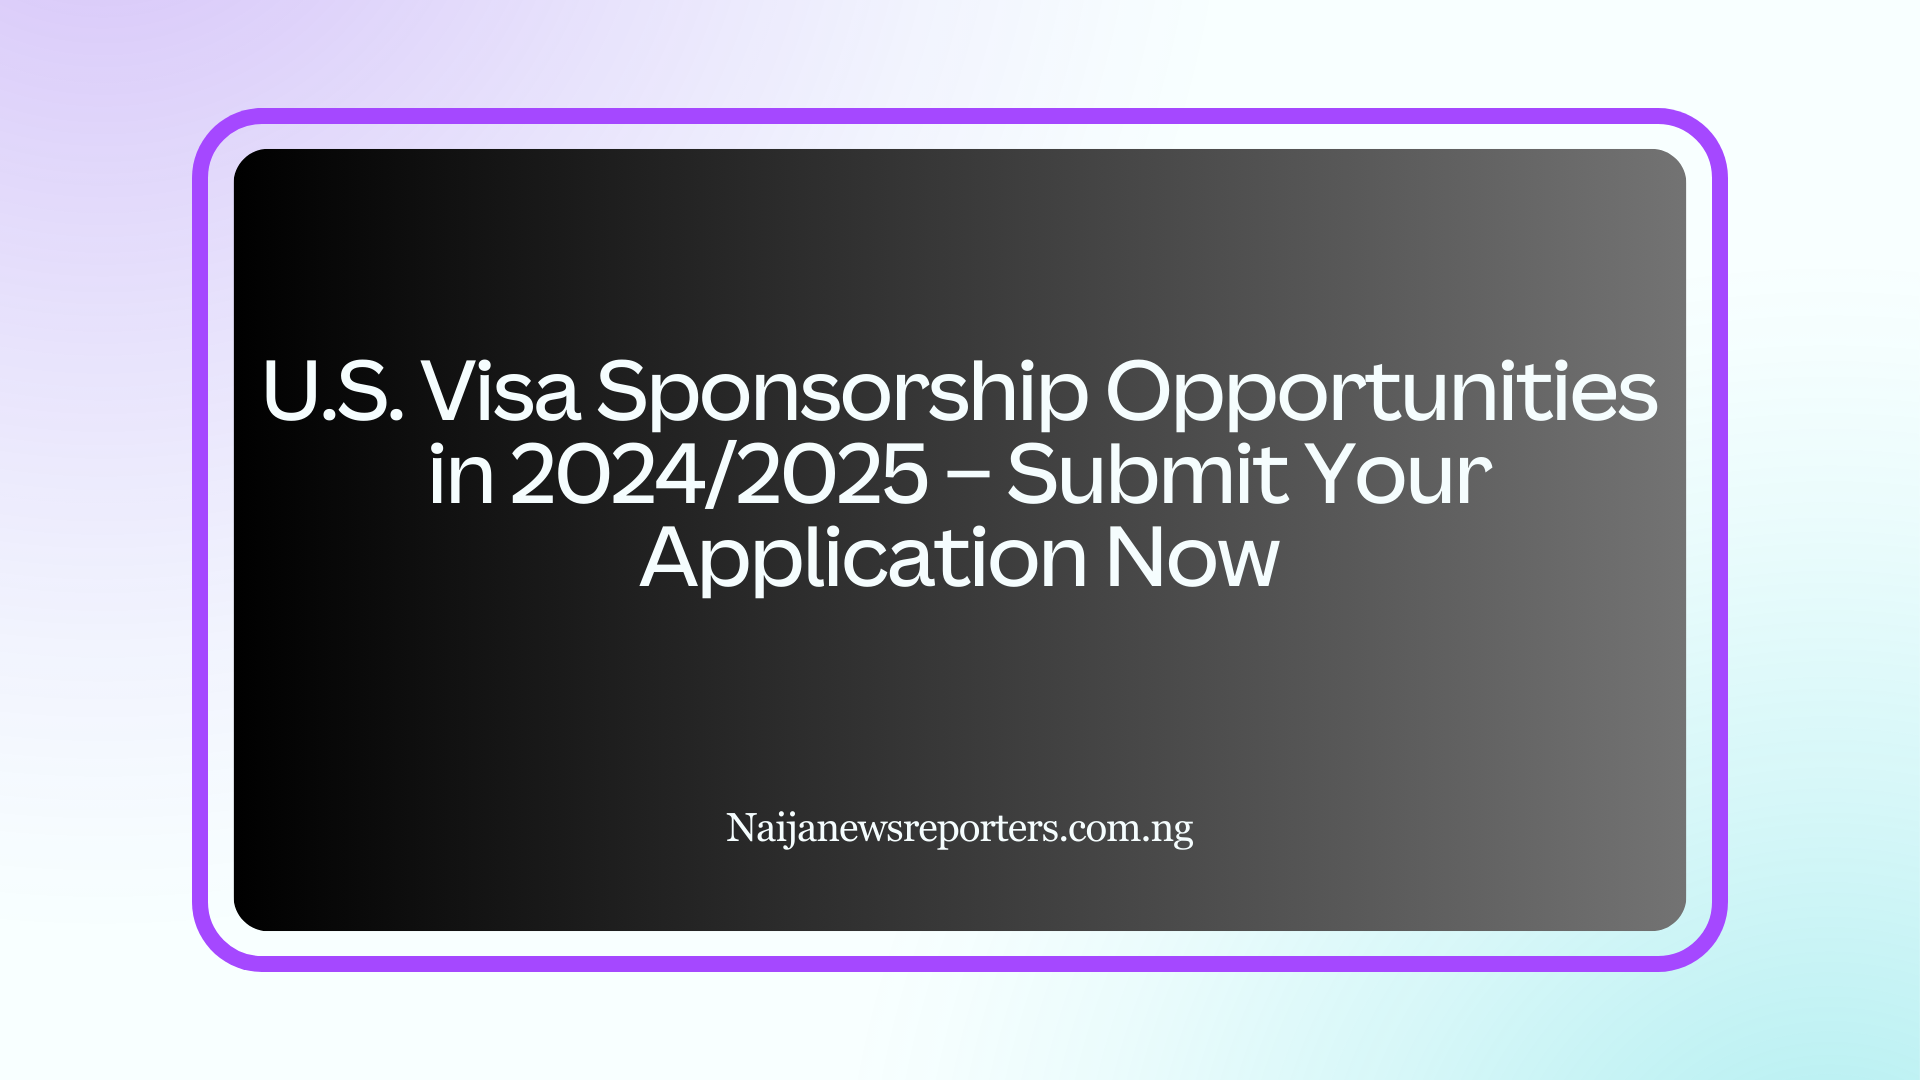 USA Visa Sponsorship Opportunities in 2024